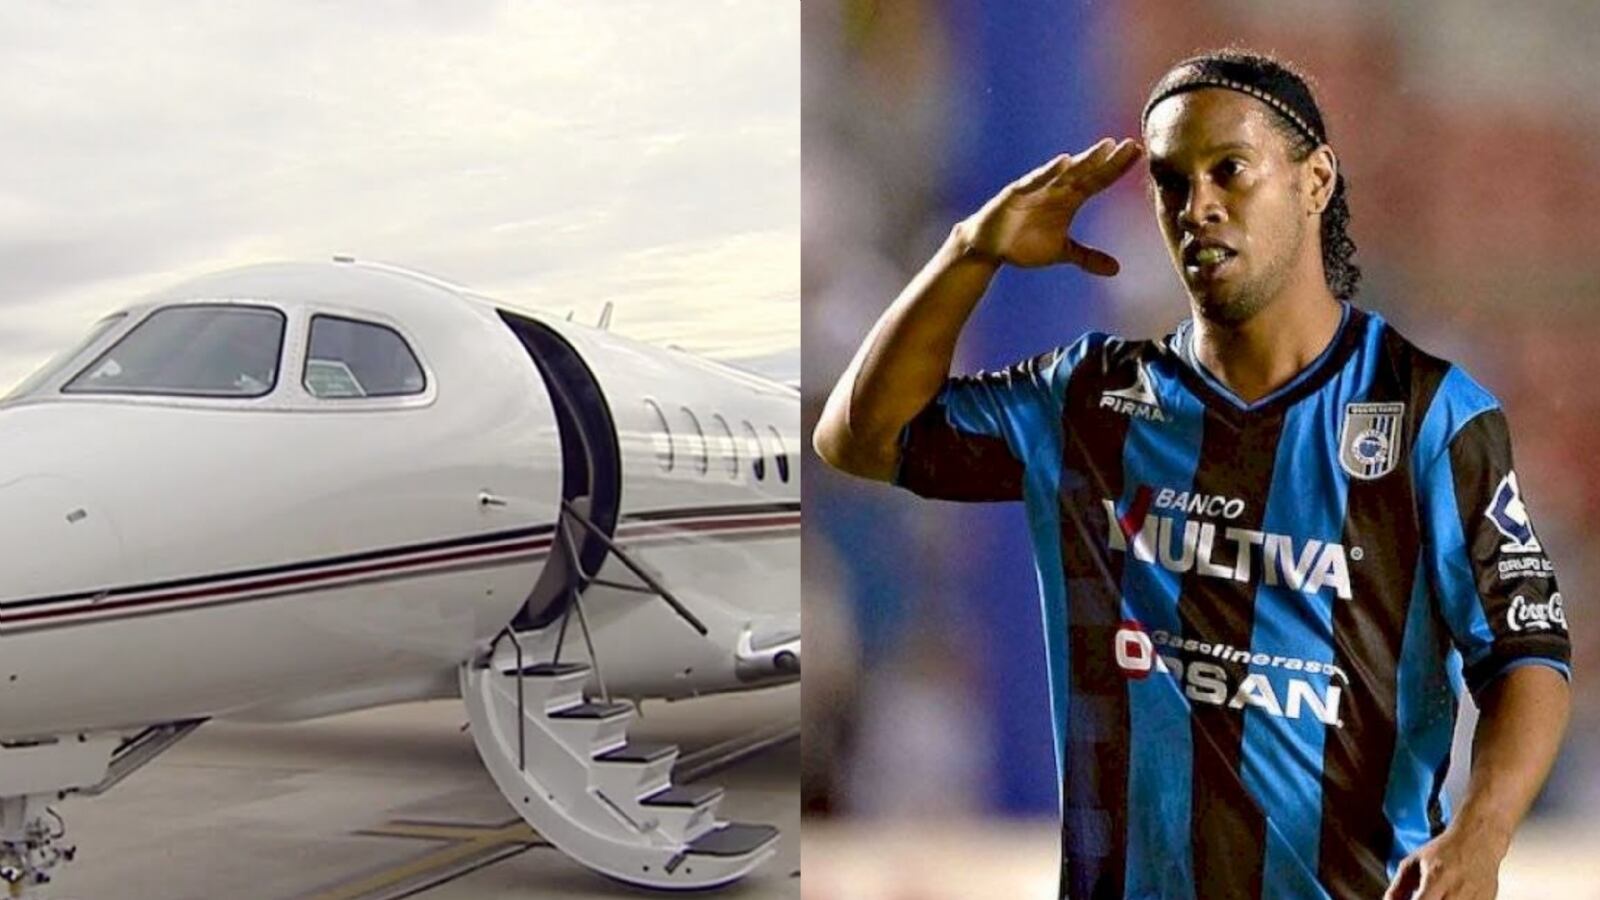 Lo que gastaba Ronaldinho en aviones para ir a Cancún de lunes a jueves